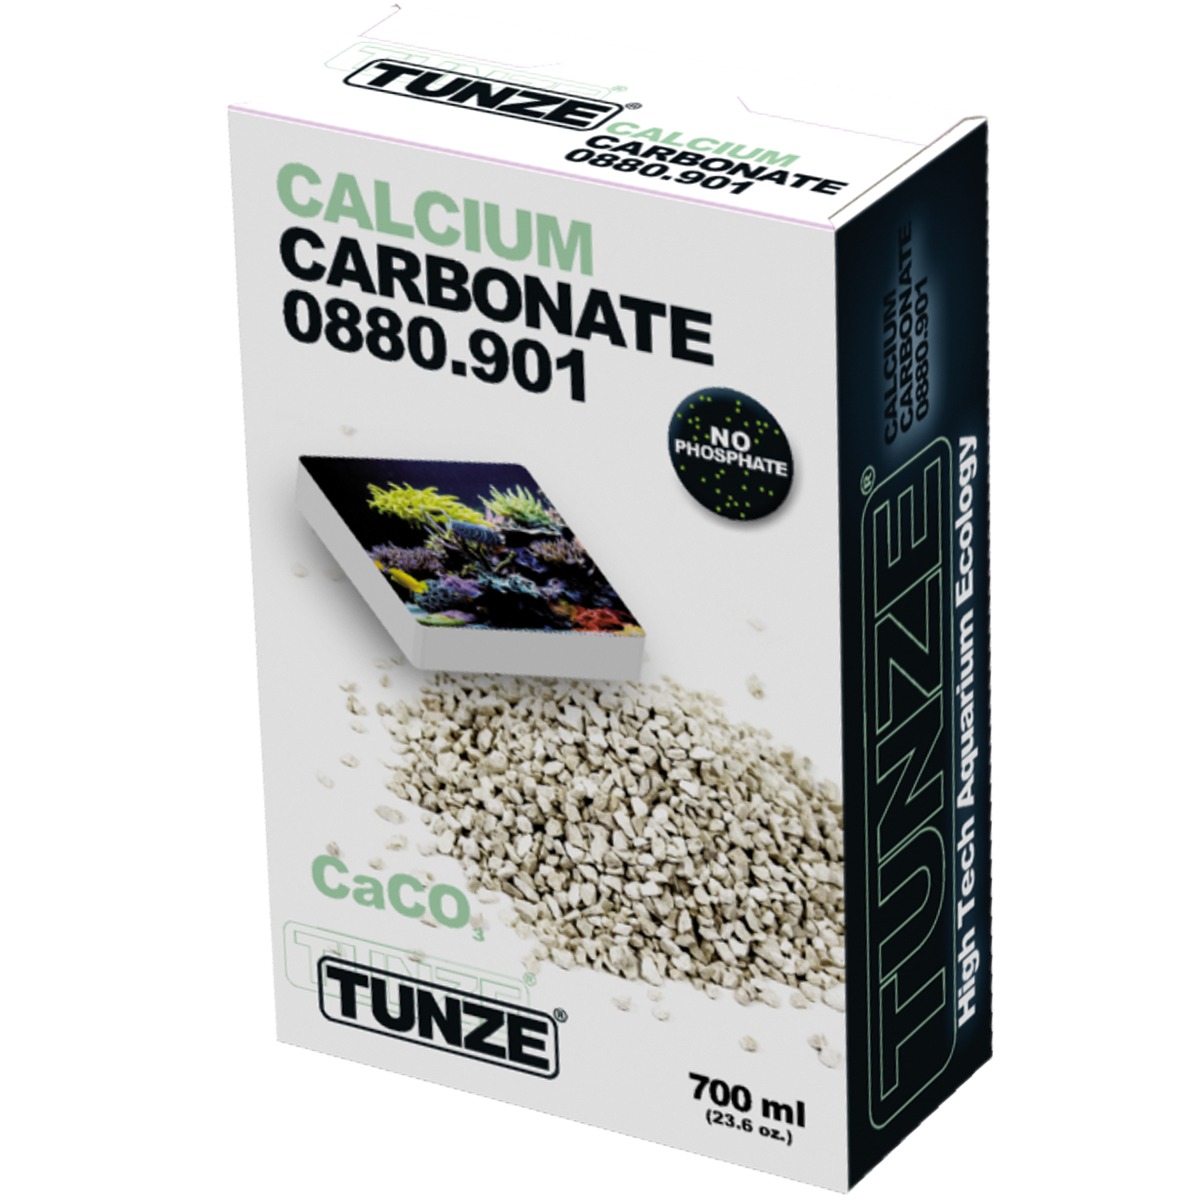 Calcium Carbonate 0880.901